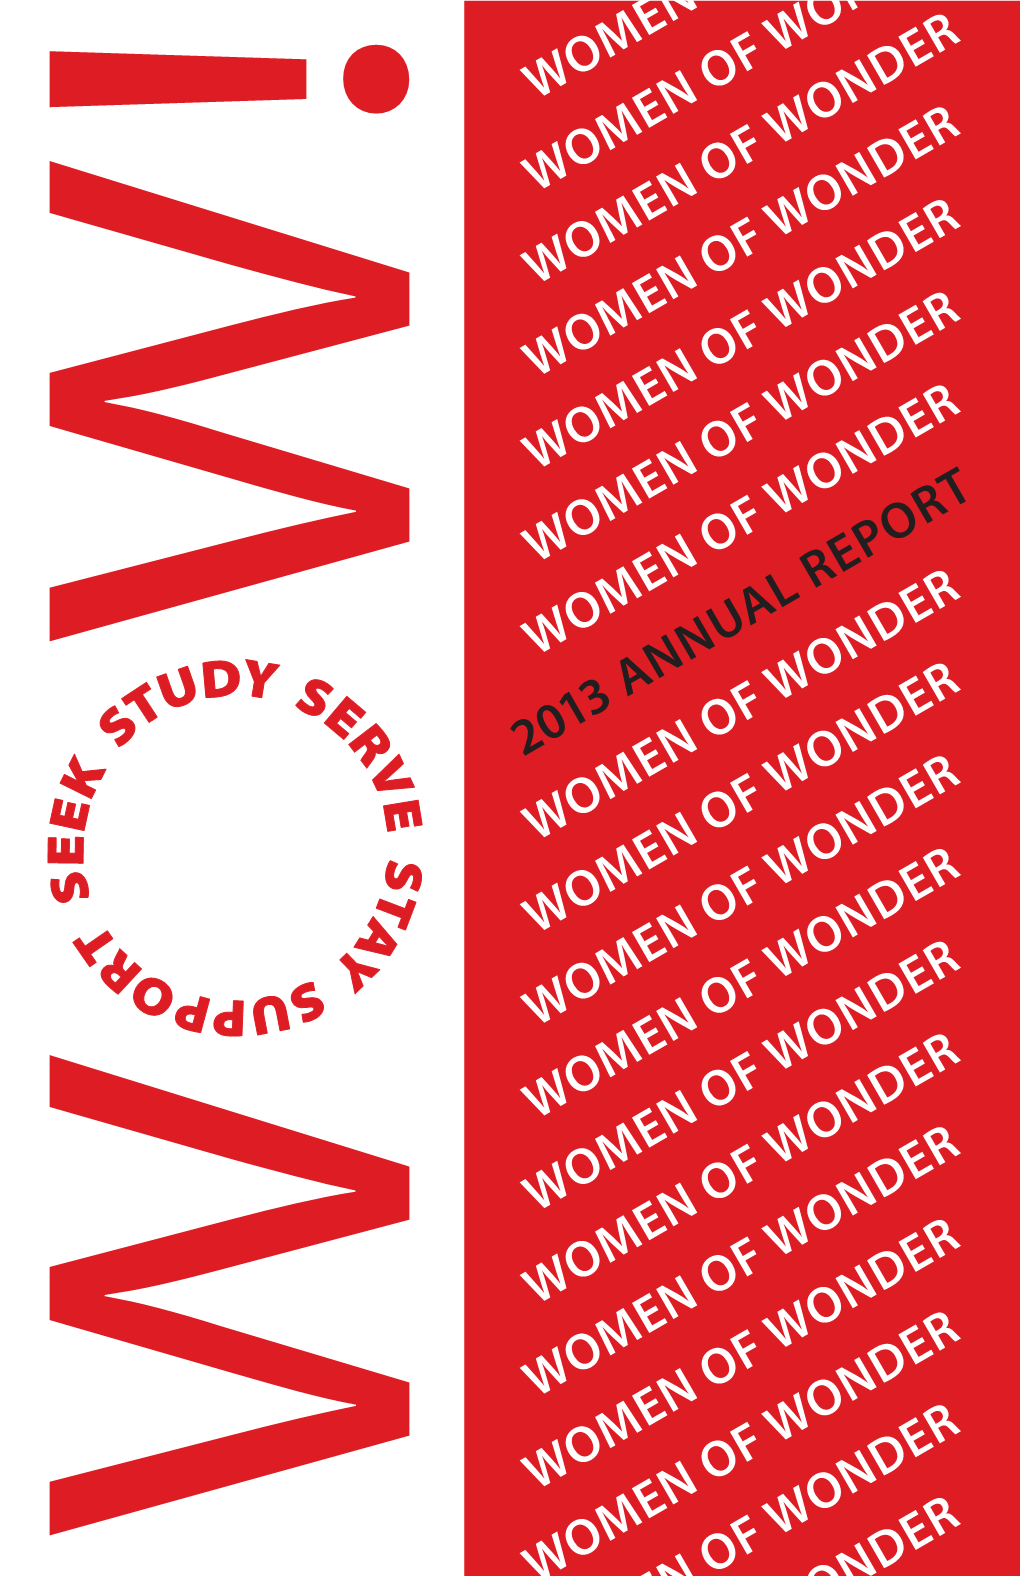 2013 Annu Women of Wonder